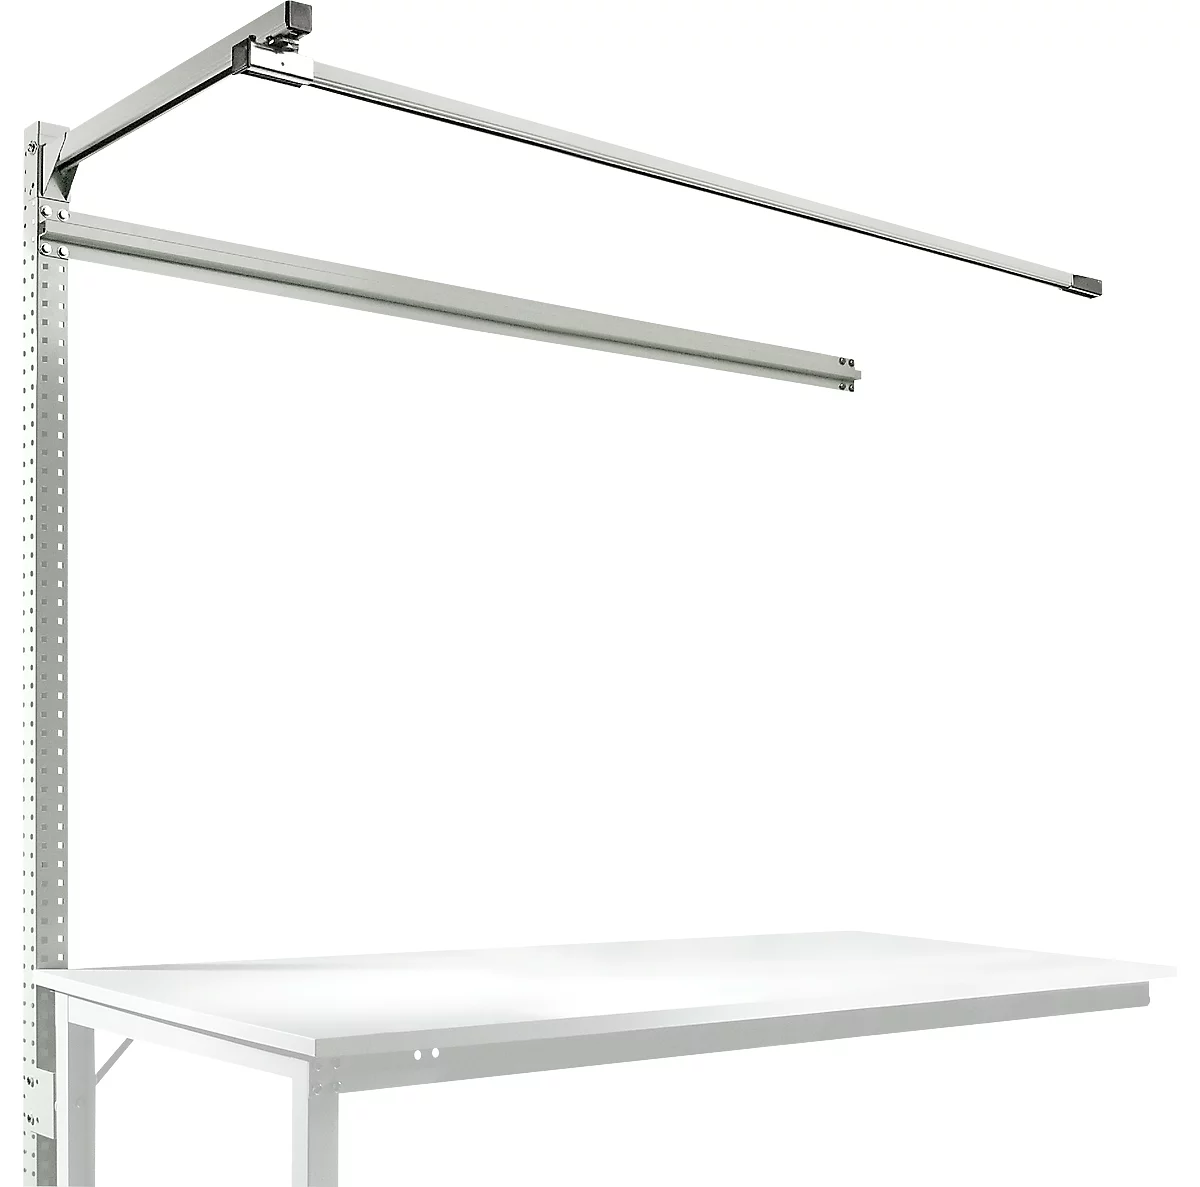 Estructura pórtica adicional con brazo saliente, Mesa de extensión STANDARD mesa de trabajo/banco de trabajo UNIVERSAL/PROFI, 1750 mm, gris luminoso